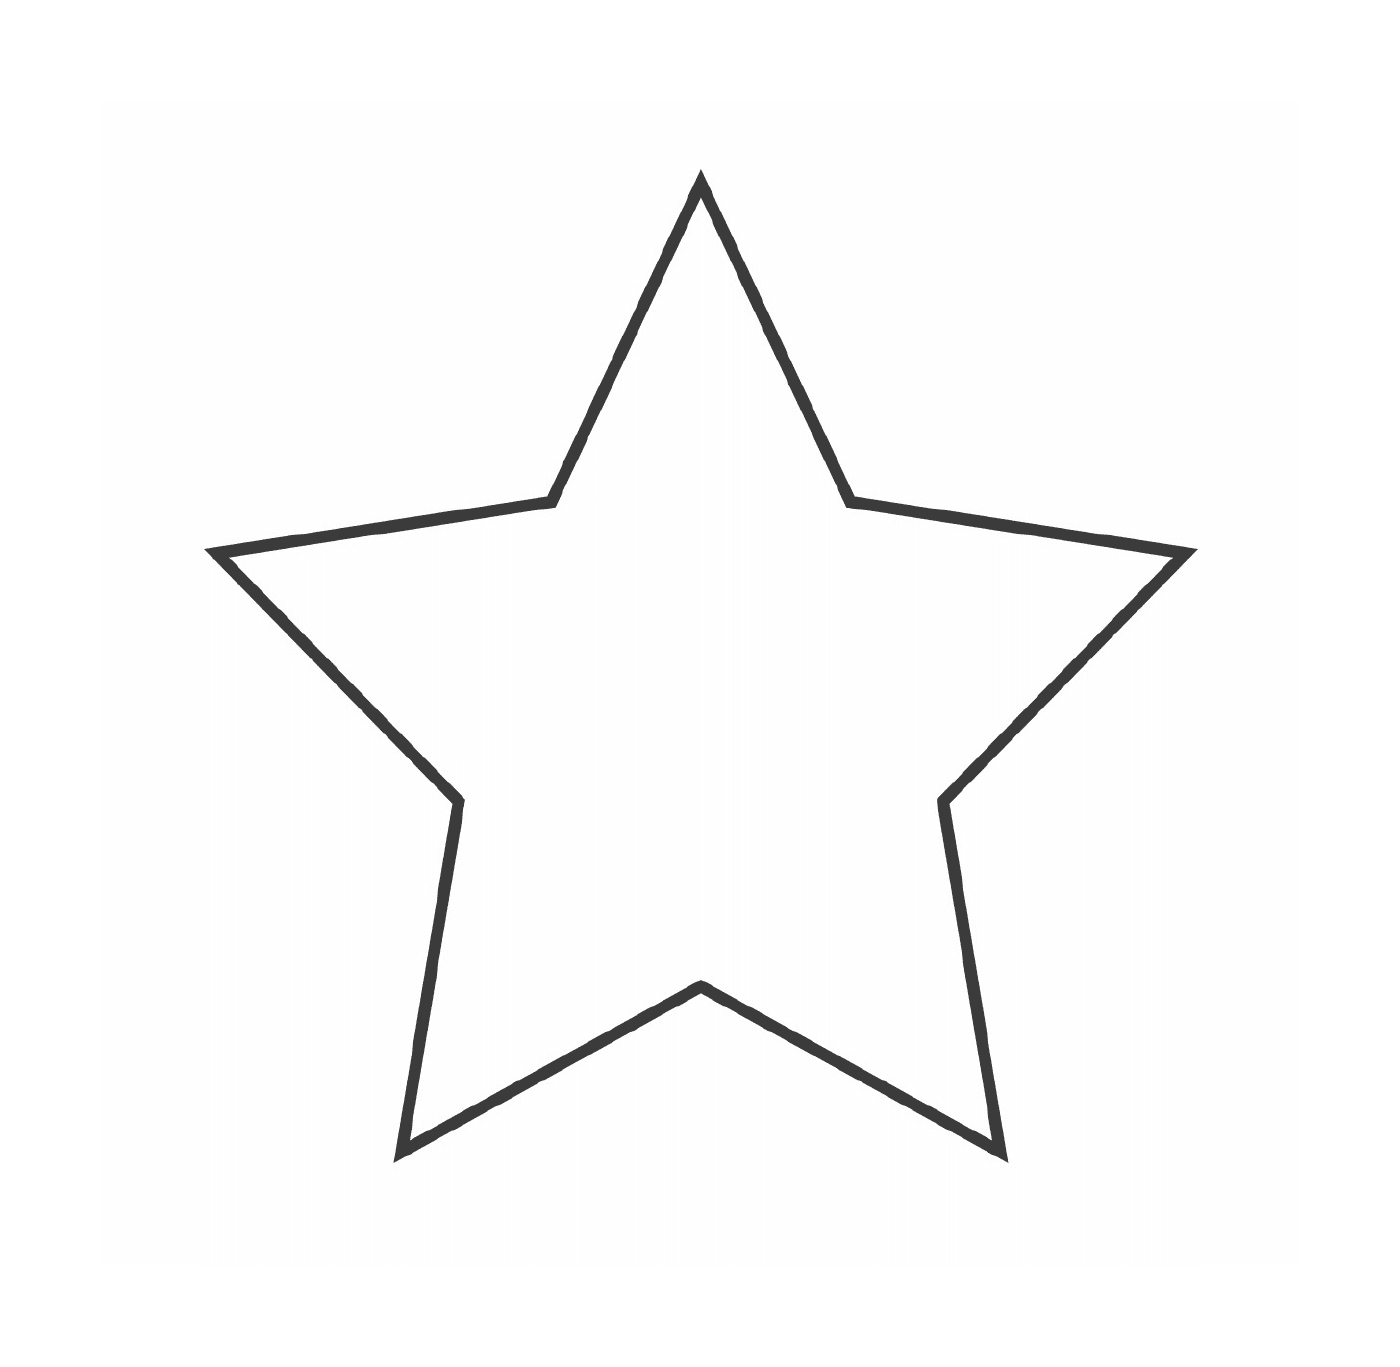  Una estrella con cinco ramas 